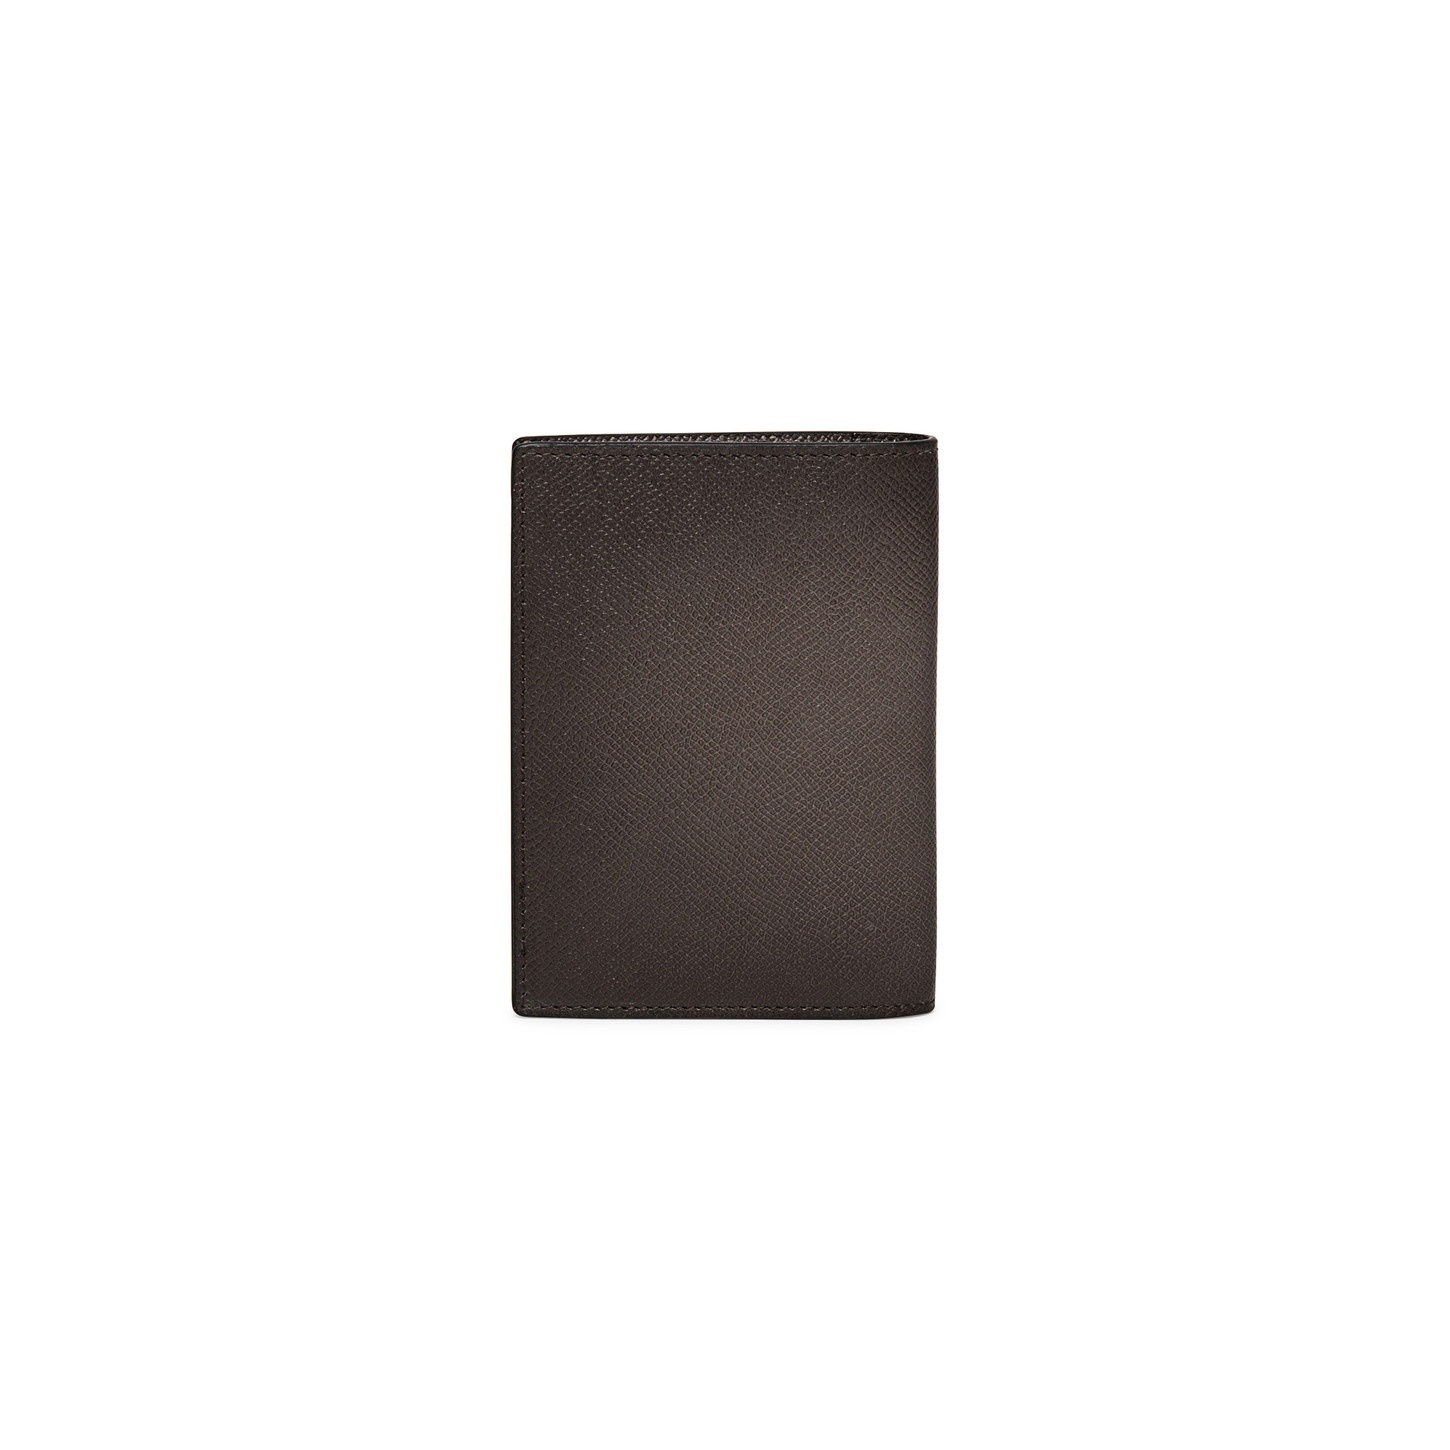 Beige saffiano leather passport case - 2